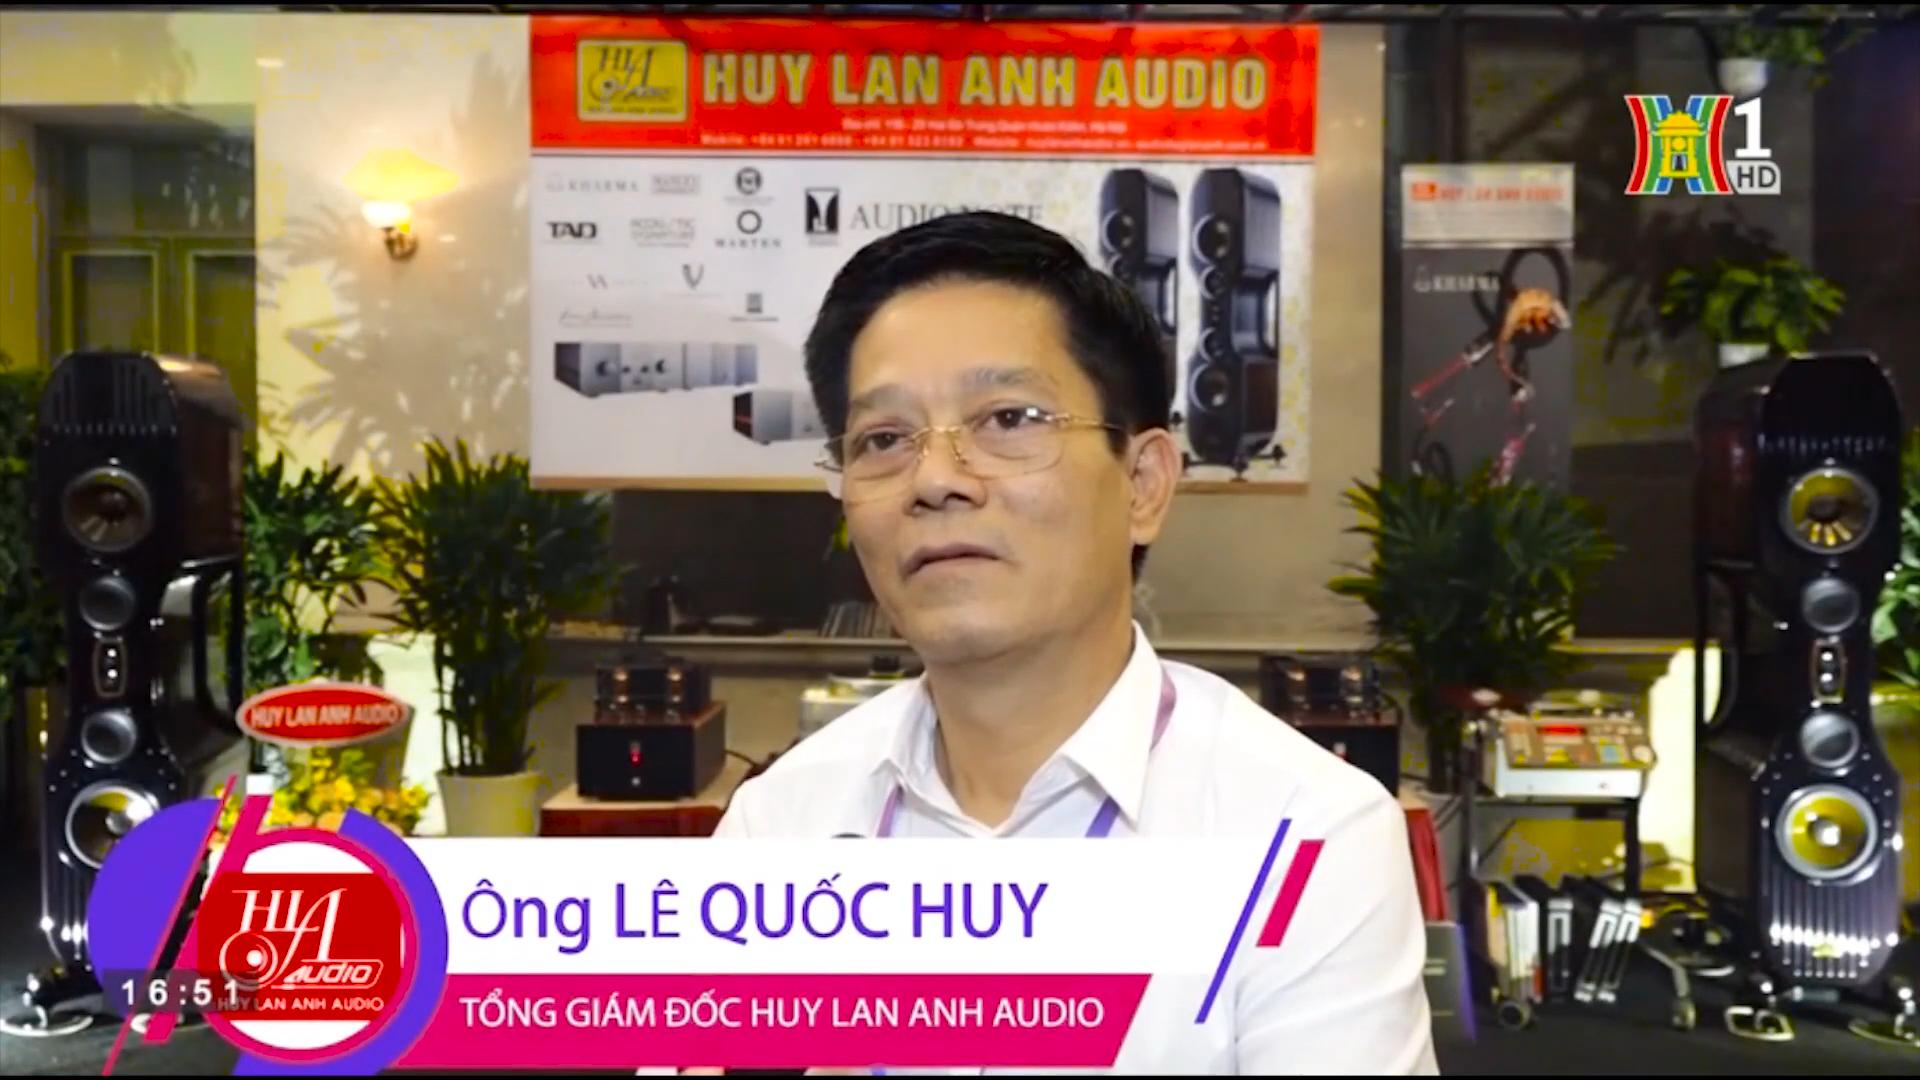 Huy Lan Anh Audio trên sóng Truyền hình Hà Nội